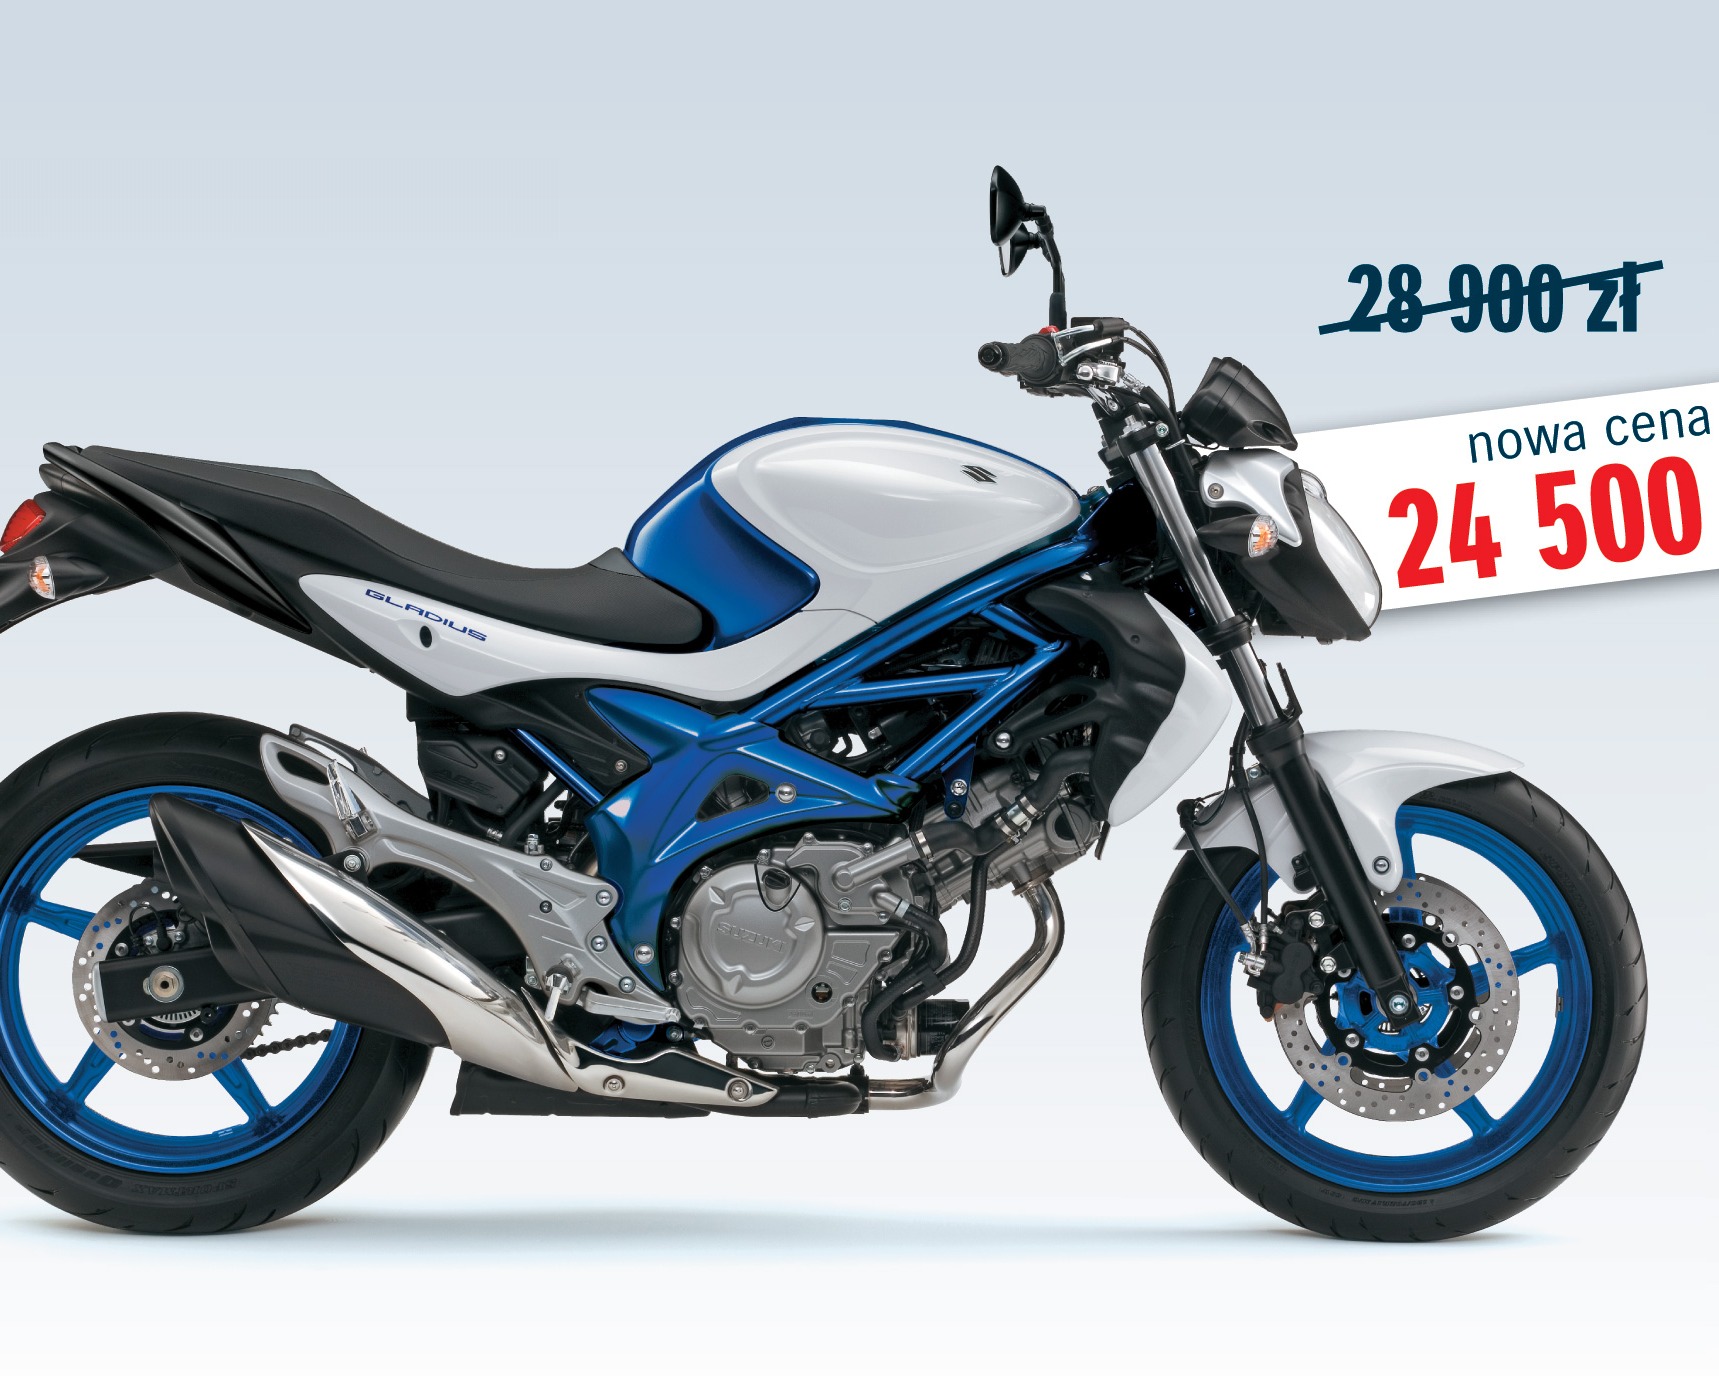 Motocykle Suzuki w niższych cenach